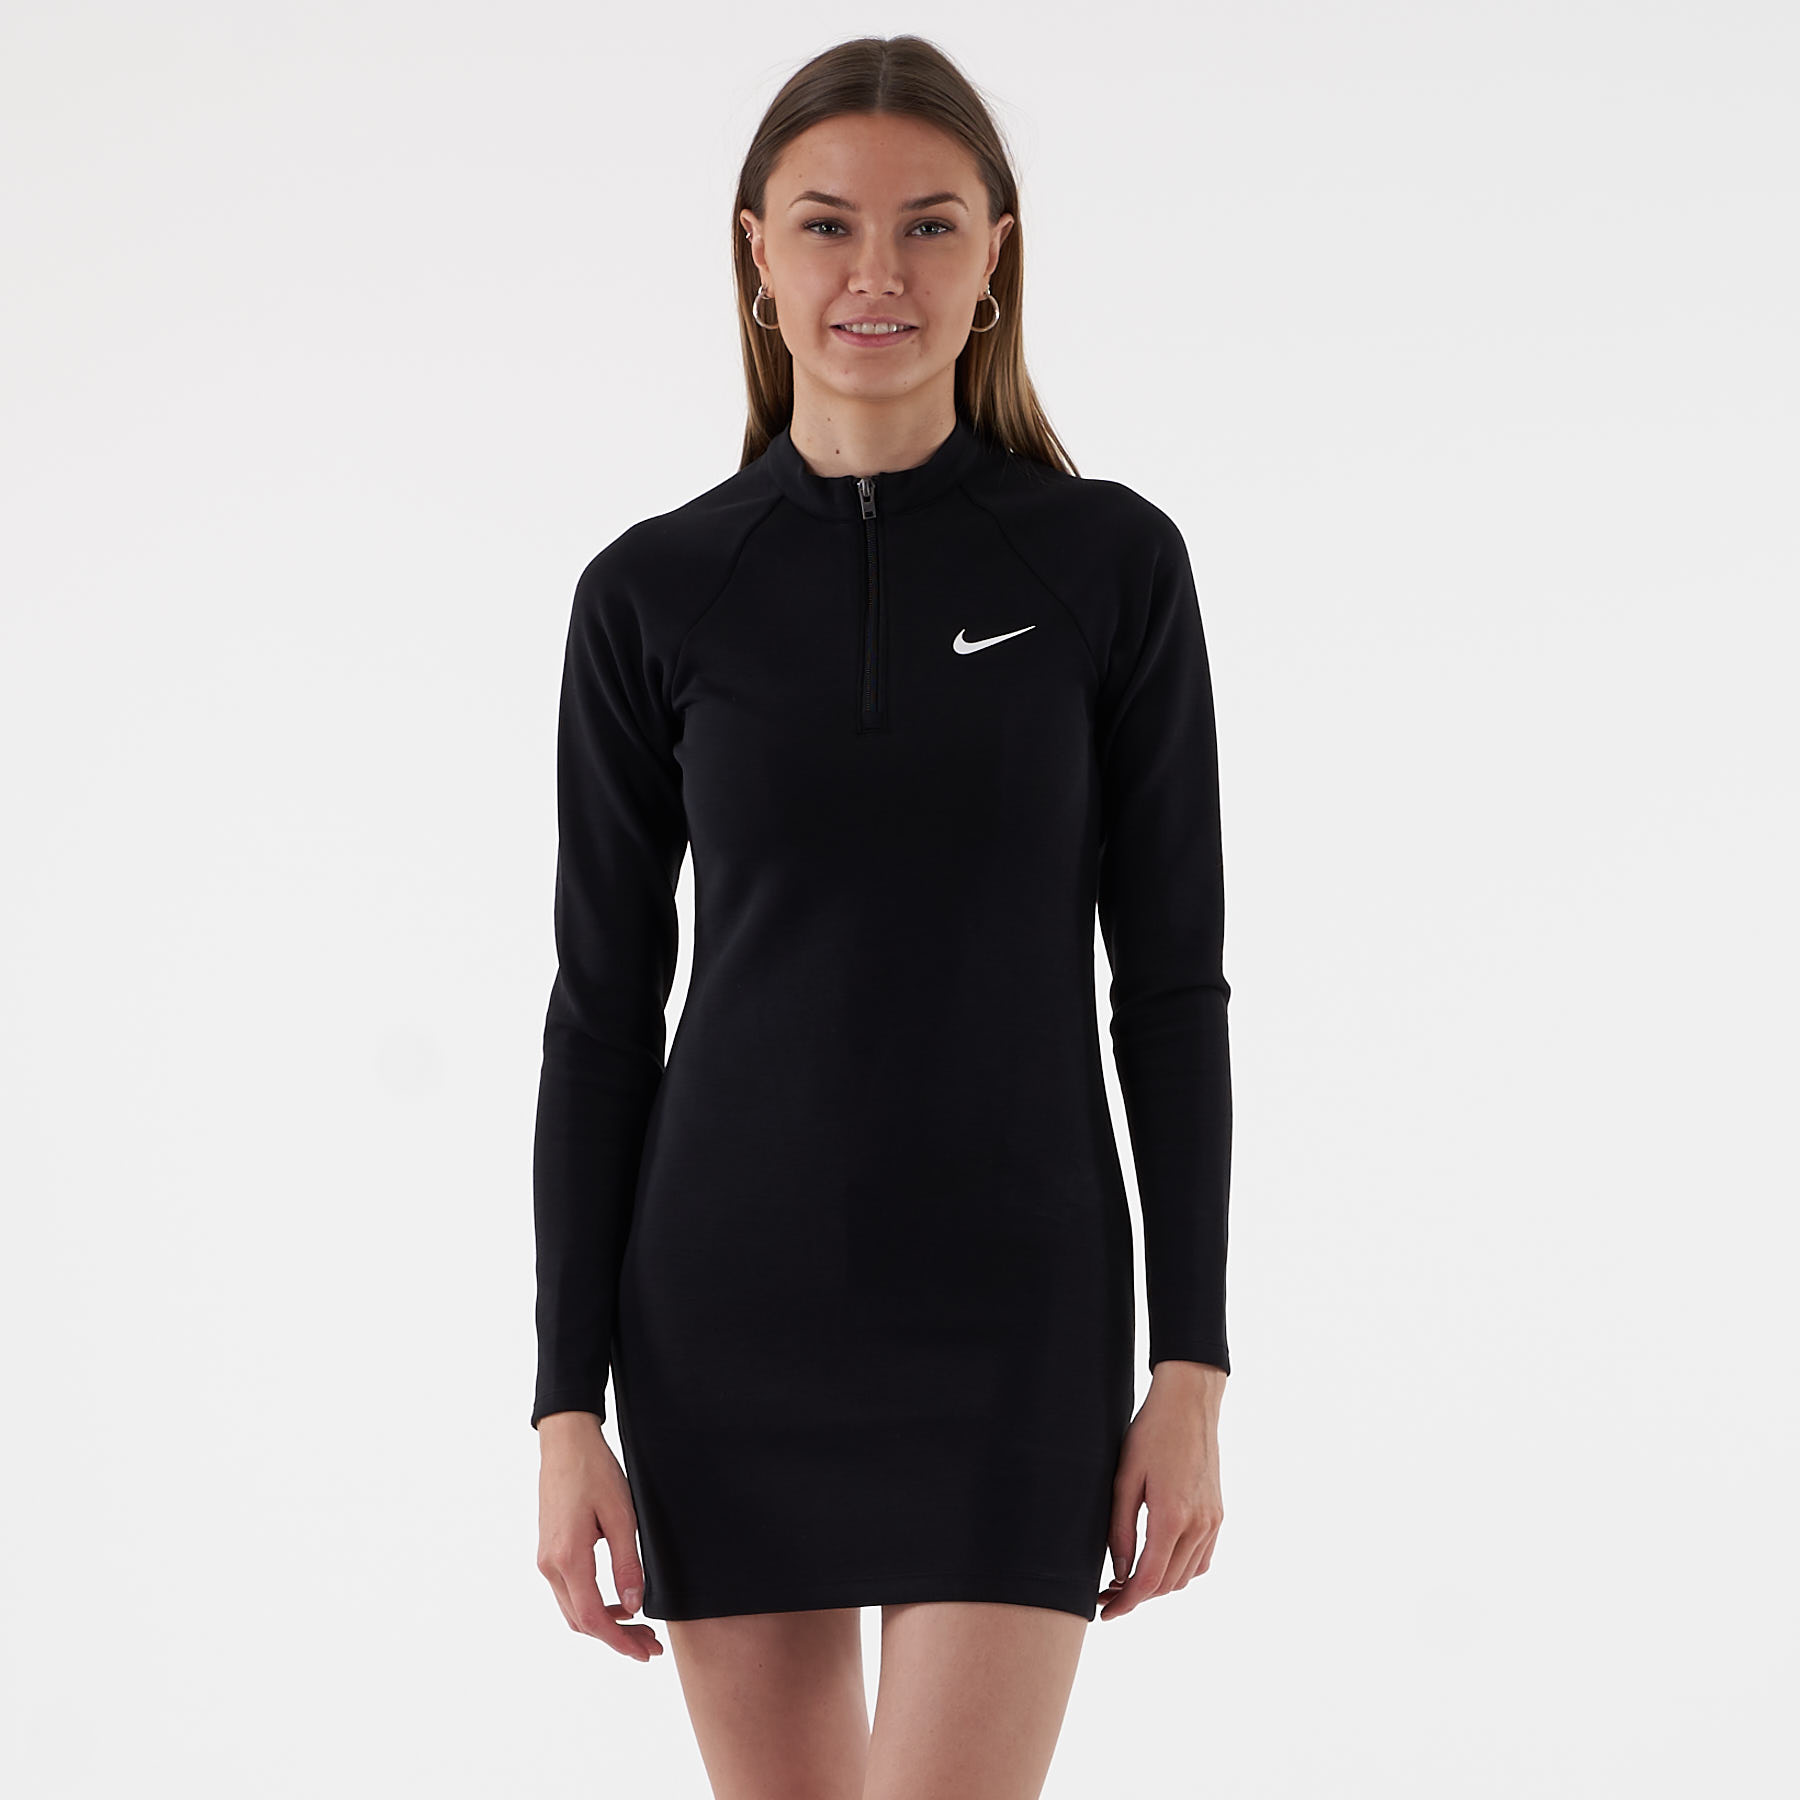 Billede af Nike - Nsw dress ls - Kjoler til hende - 010 BLACK/WHITE - S